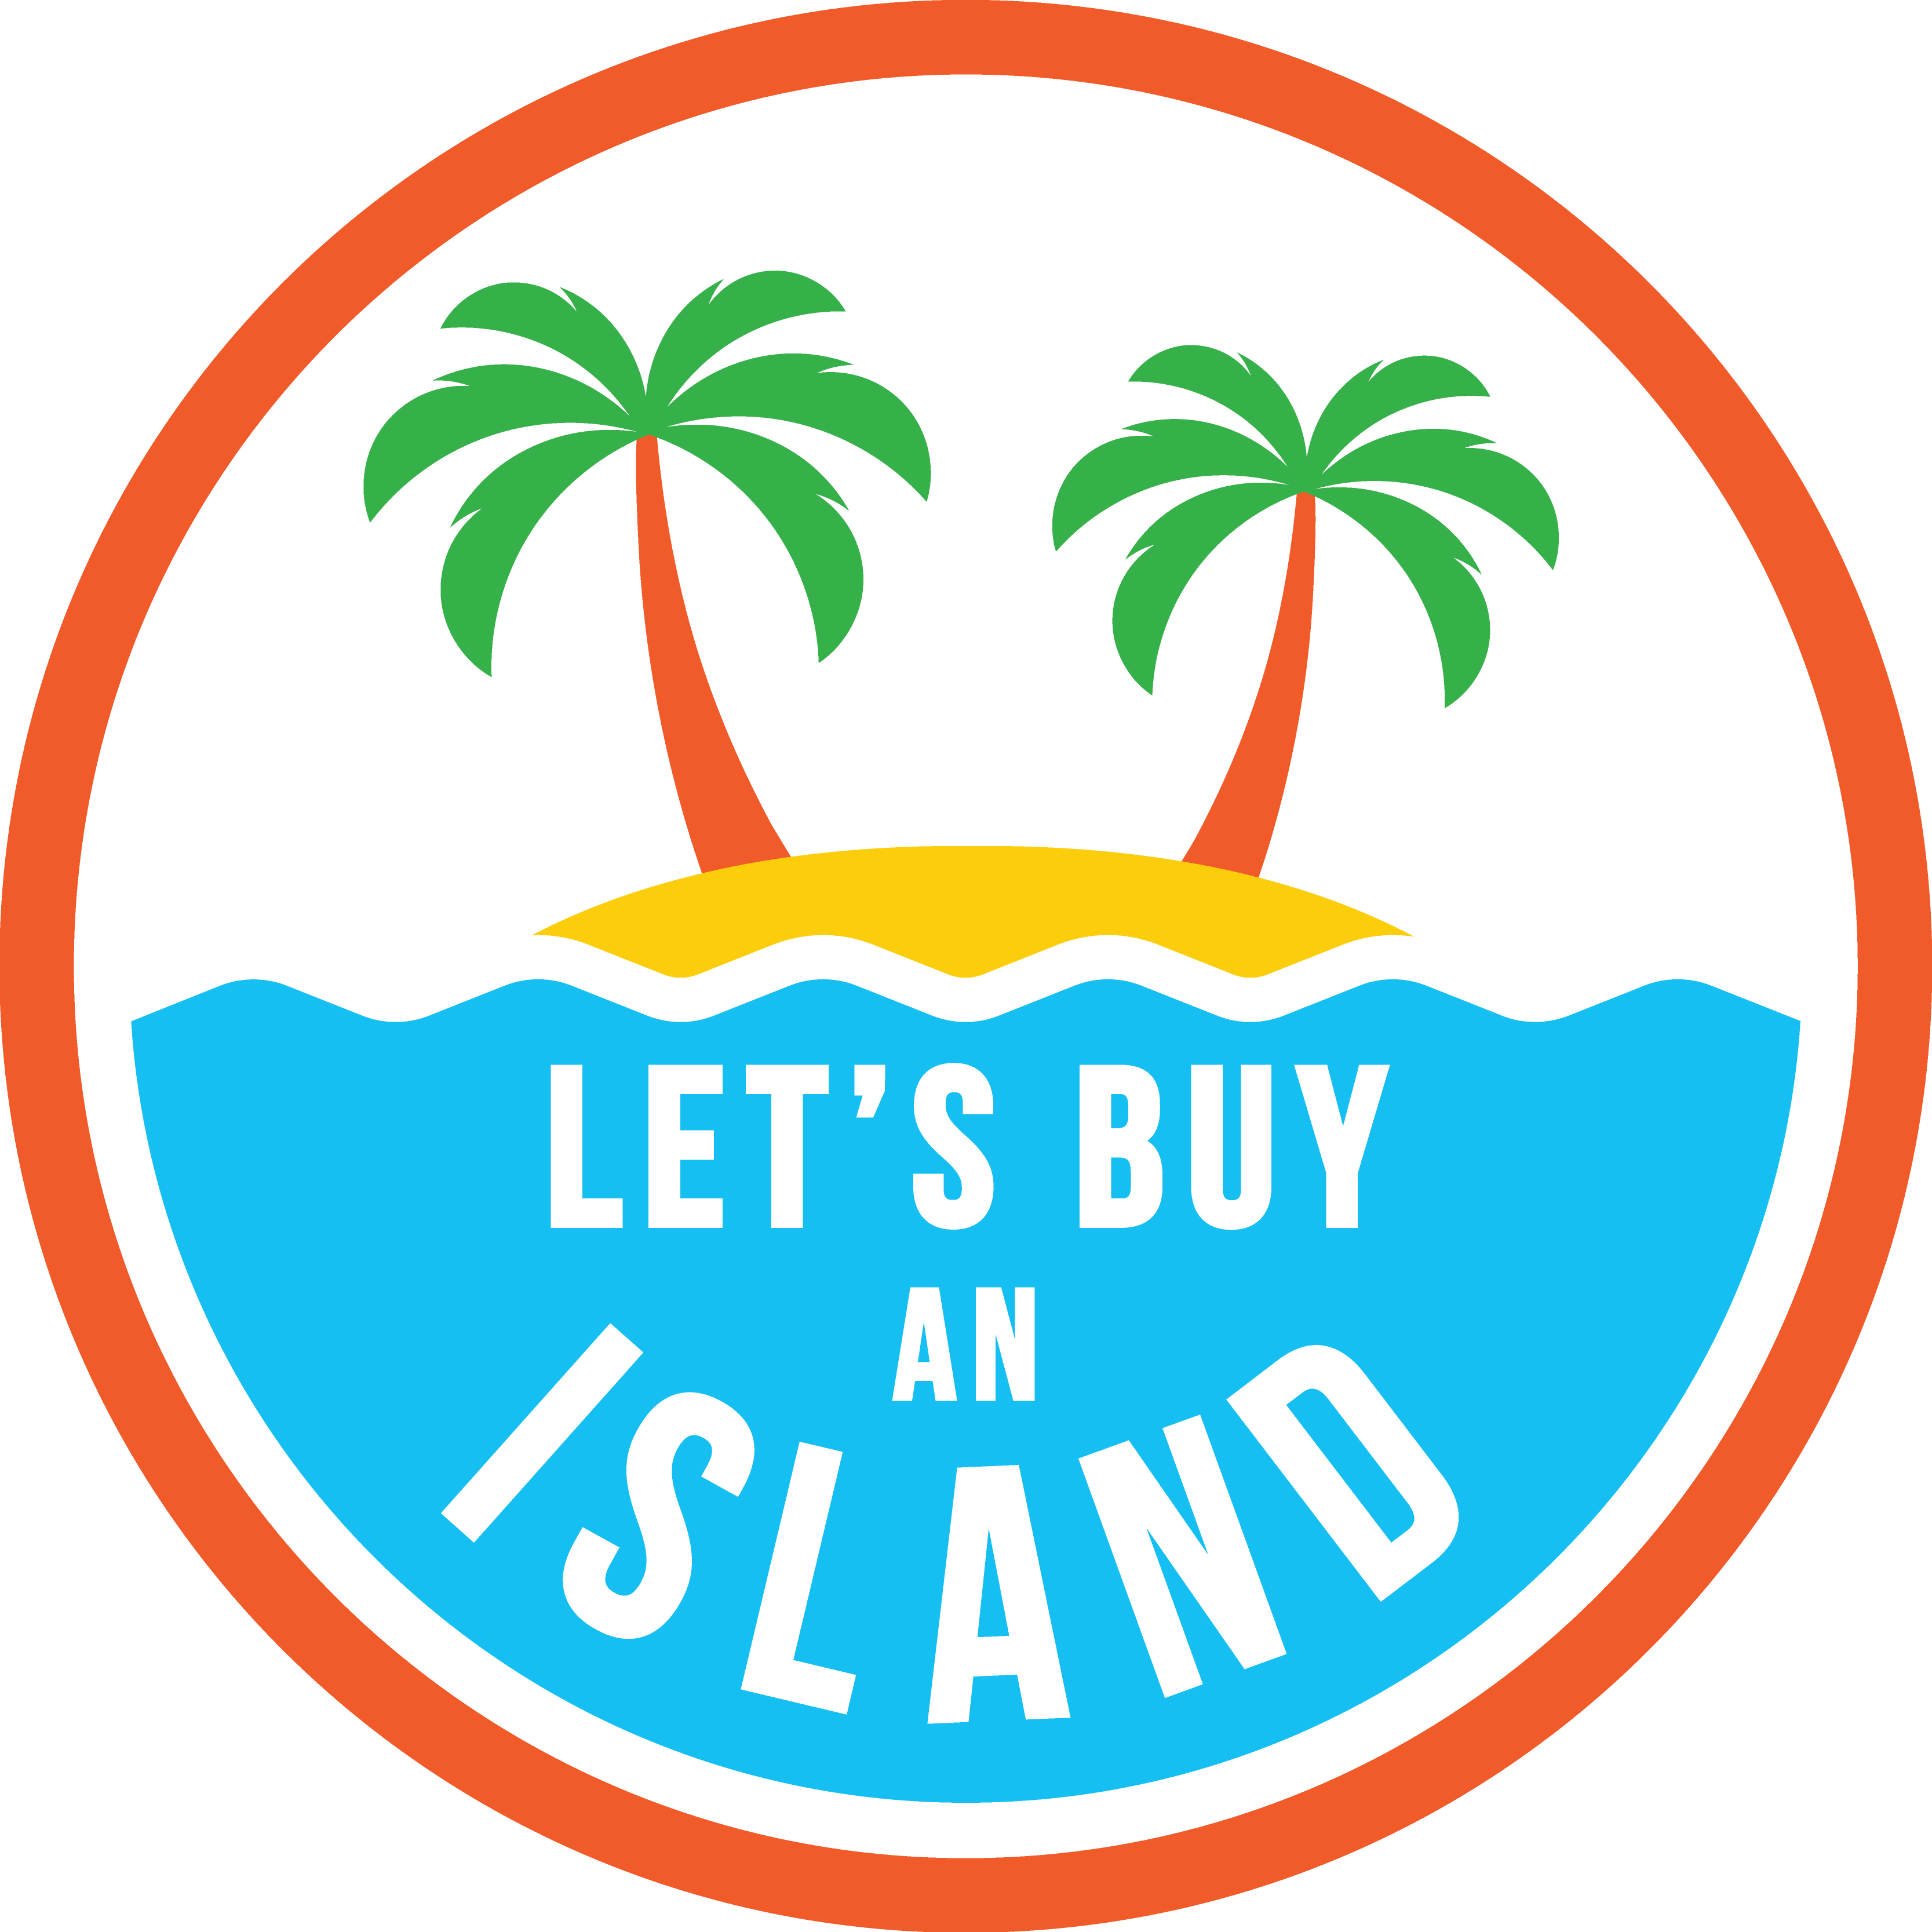 Lets island. Логотип остров. Острово лого. Buy Island. Tastyisland лого.